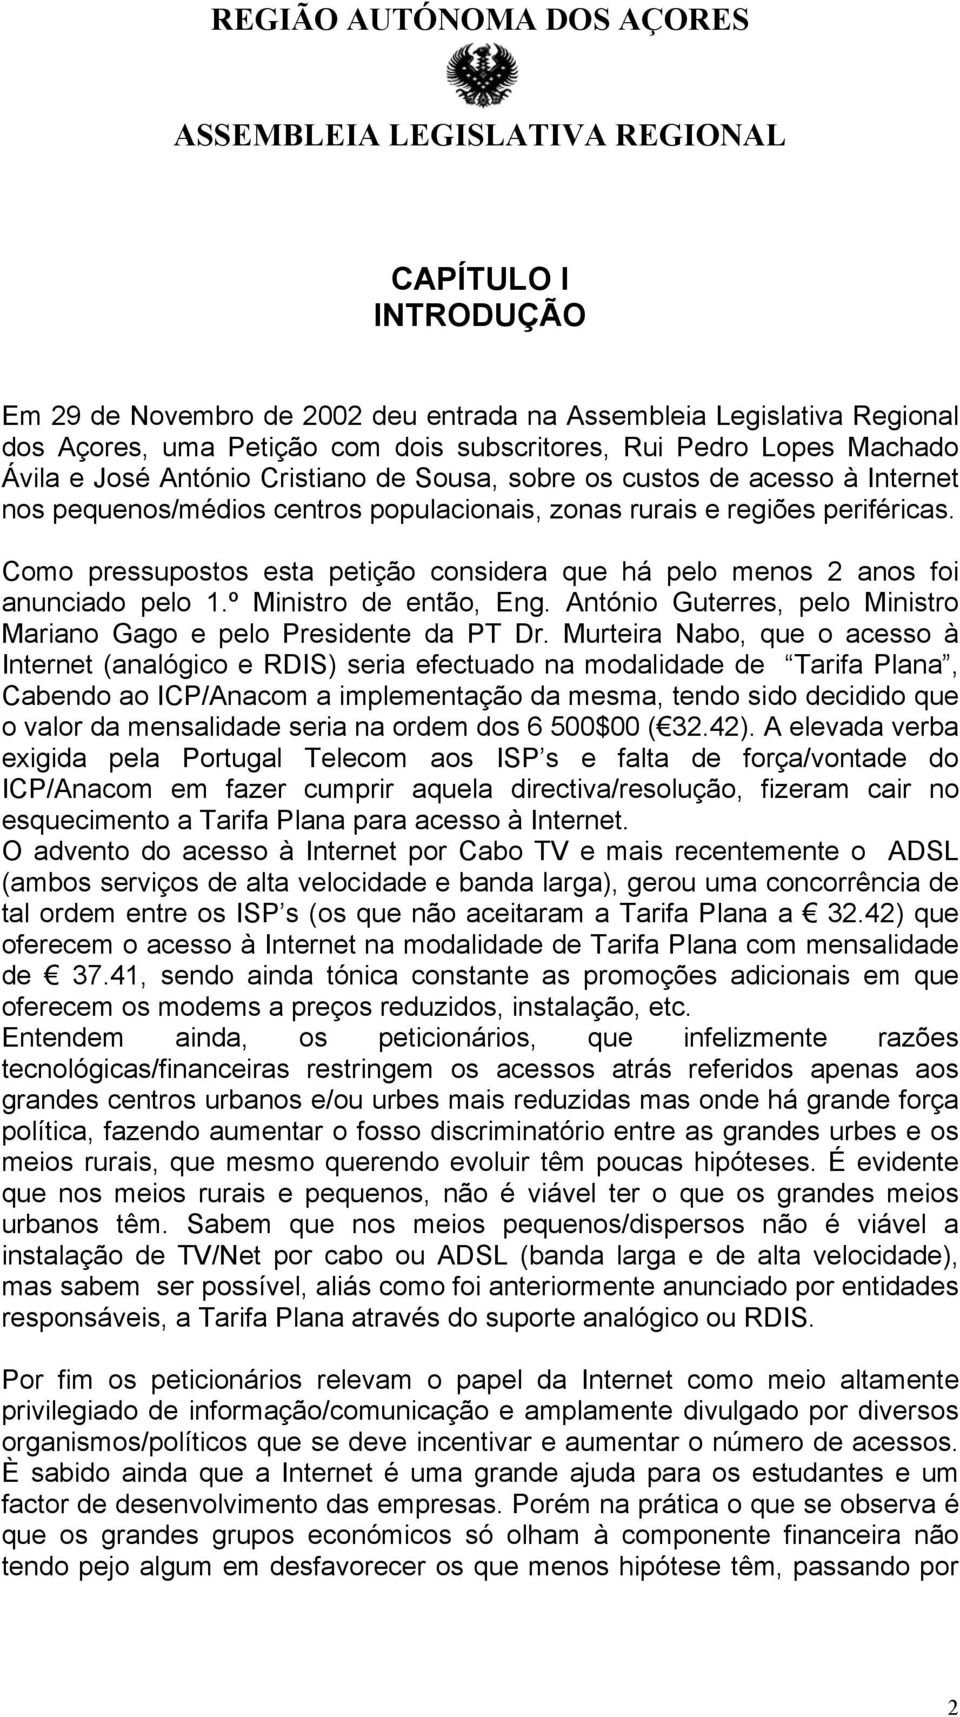 Como pressupostos esta petição considera que há pelo menos 2 anos foi anunciado pelo 1.º Ministro de então, Eng. António Guterres, pelo Ministro Mariano Gago e pelo Presidente da PT Dr.